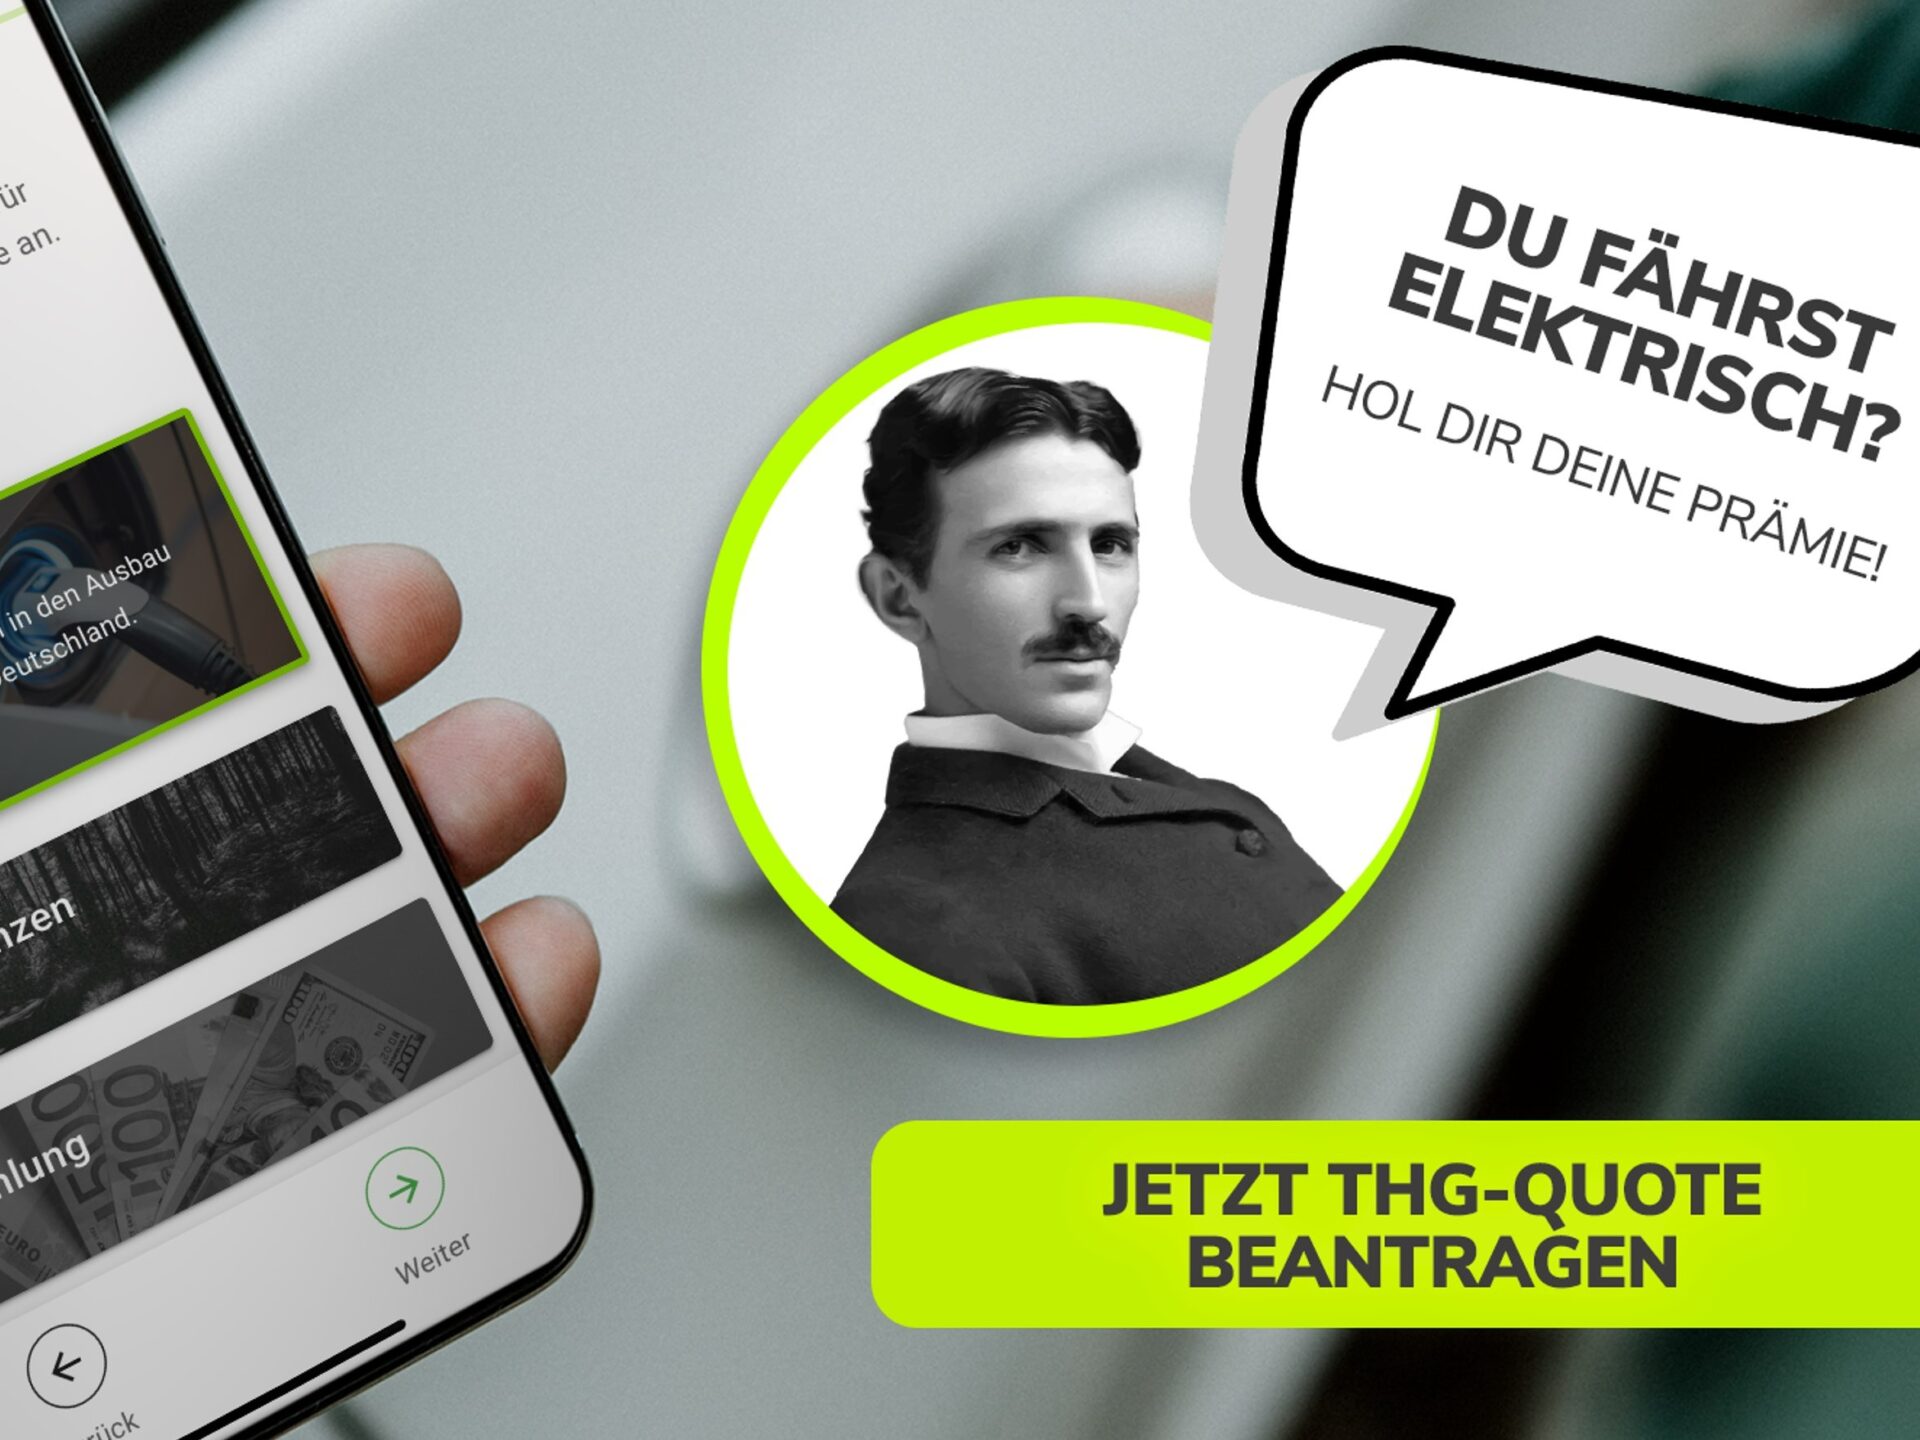 Ein Werbeplakat mit dem Portrait von Niklas Tesla, mit Sprechlase. Du fährst elektrisch? Hol Dir Deine Prämie!